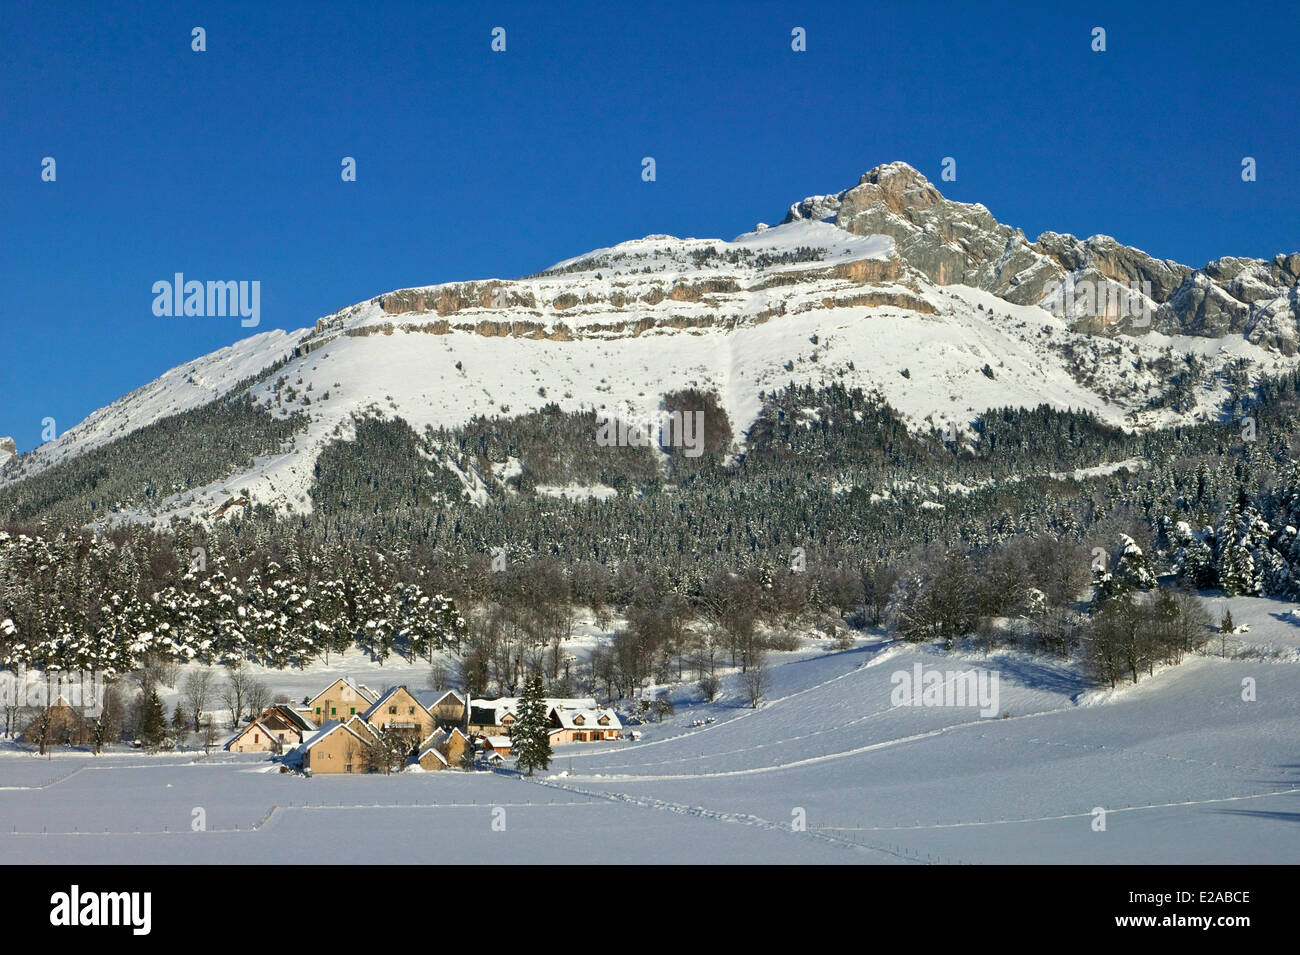 Francia, Isere, Les Clos frazione verso la Cote 2000 ski resort in inverno nel Parc Naturel Regional du Vercors (Regionale Naturale Foto Stock